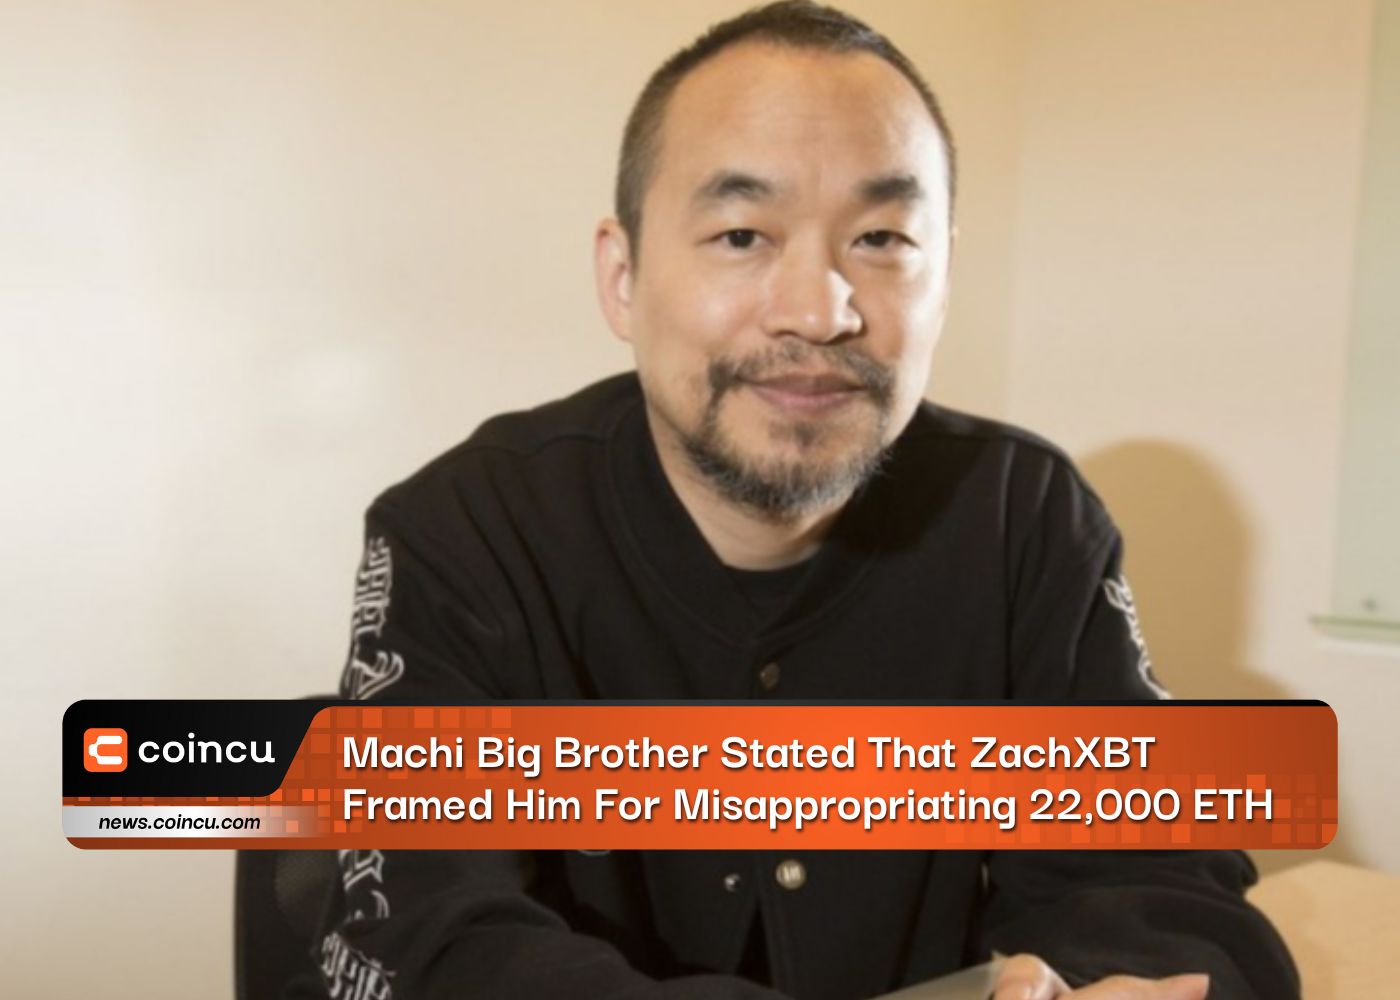 Machi Big Brother afirmou que ZachXBT o incriminou por apropriação indevida de 22,000 ETH